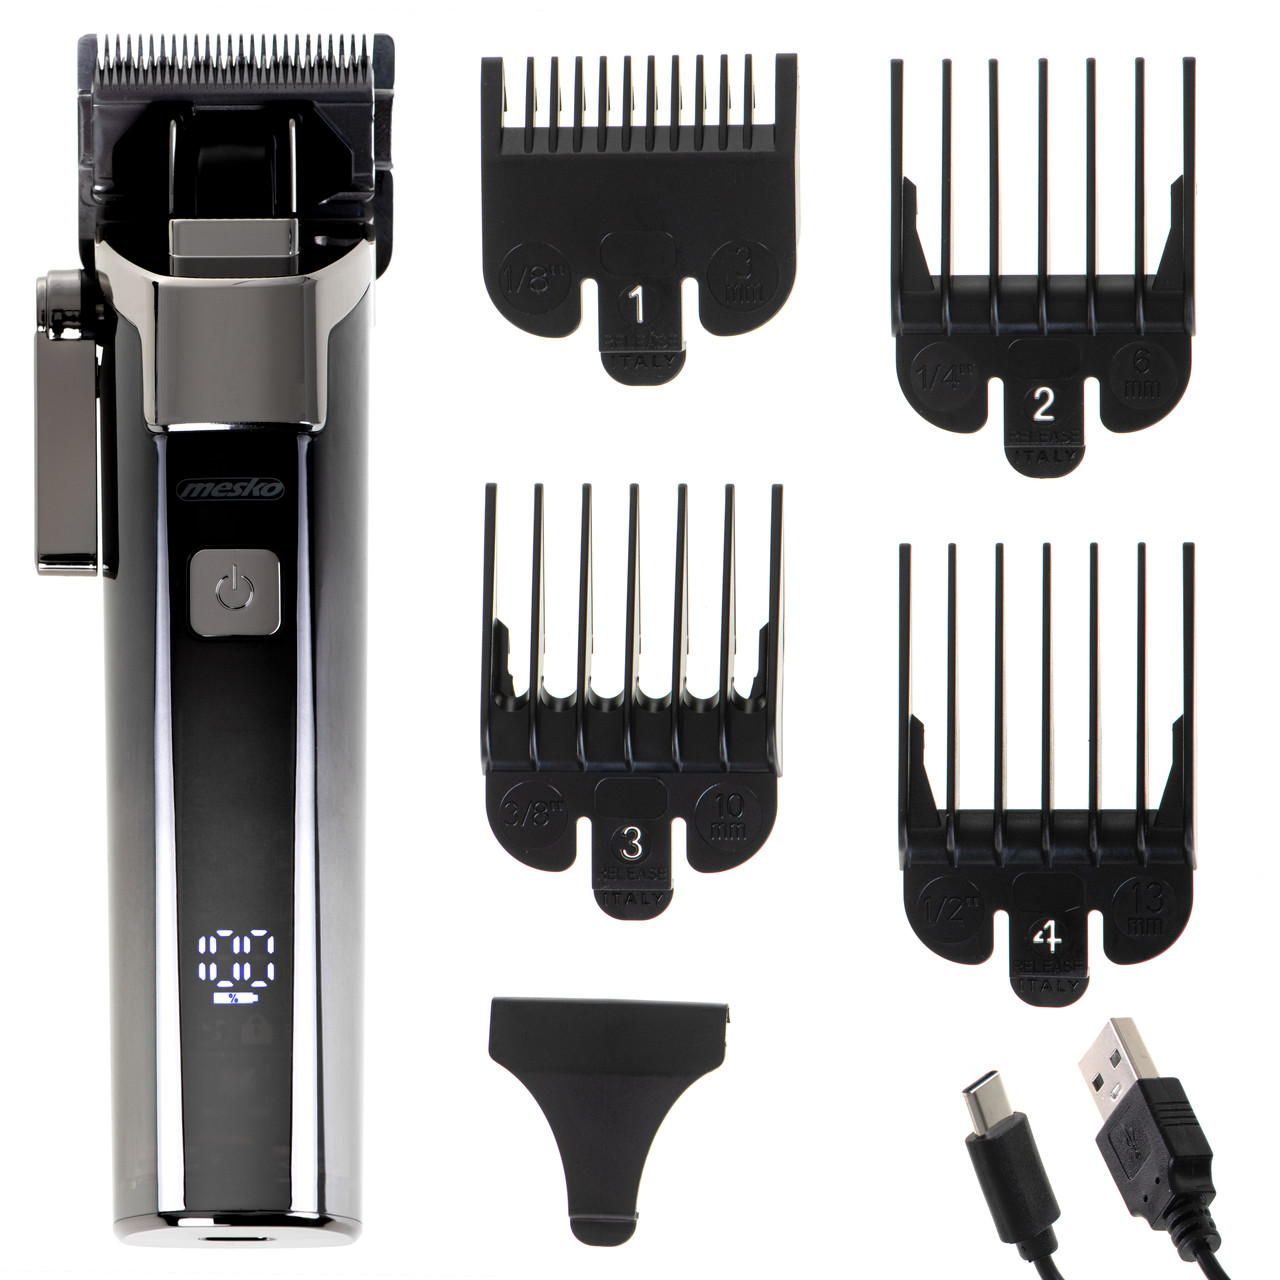 Машинка для стриження волосся Mesko MS 2842 (USB, IPX 6, РК-дисплей, Польща)